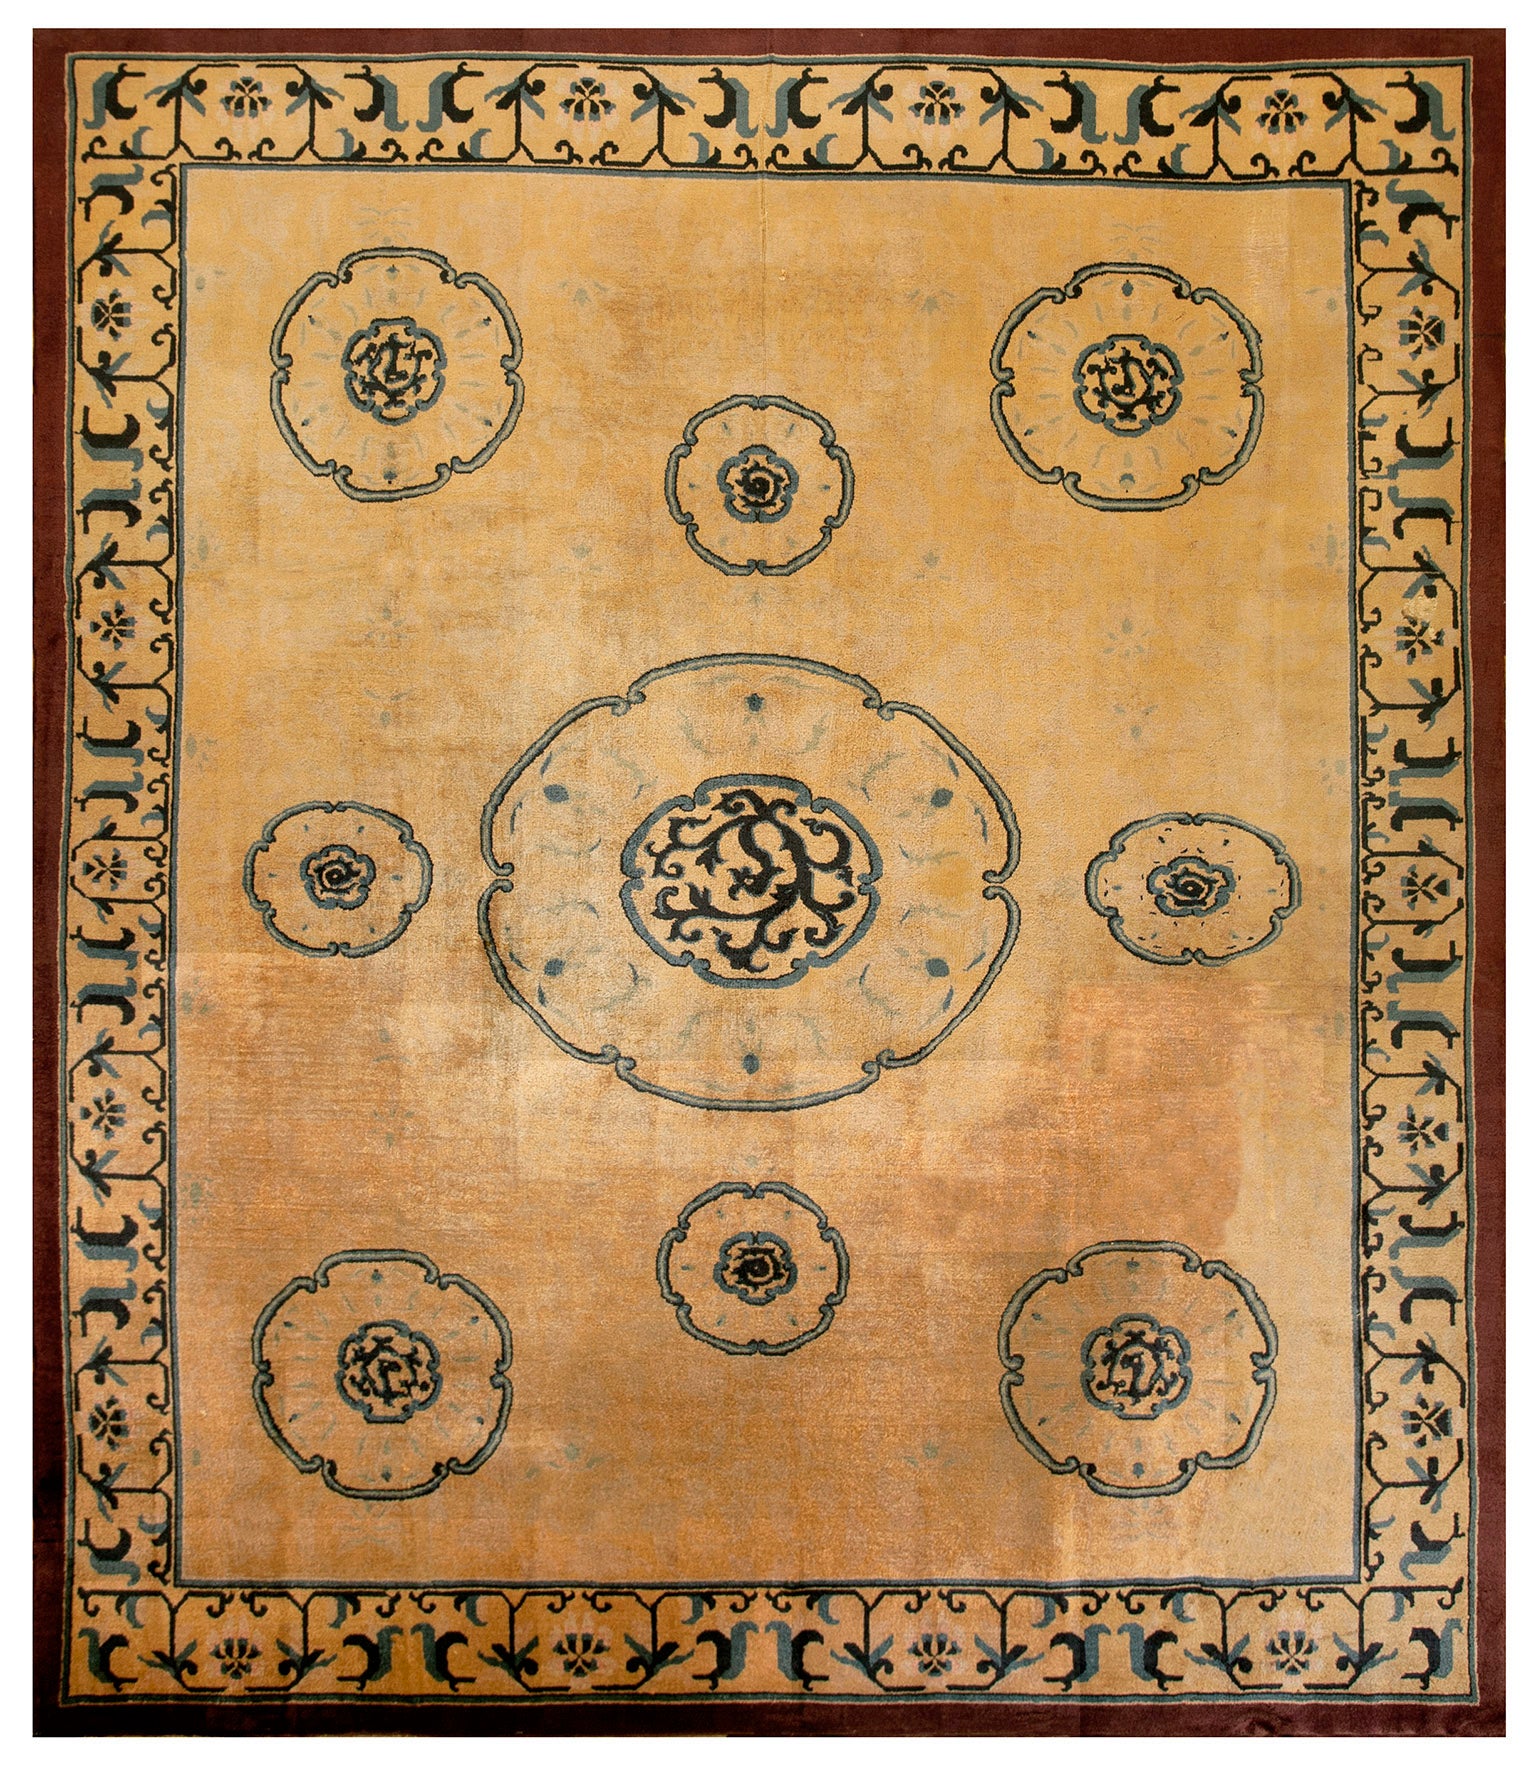 Chinesischer Teppich des frühen 20. Jahrhunderts ( 9'6" x 11'2" - 290 x 340)